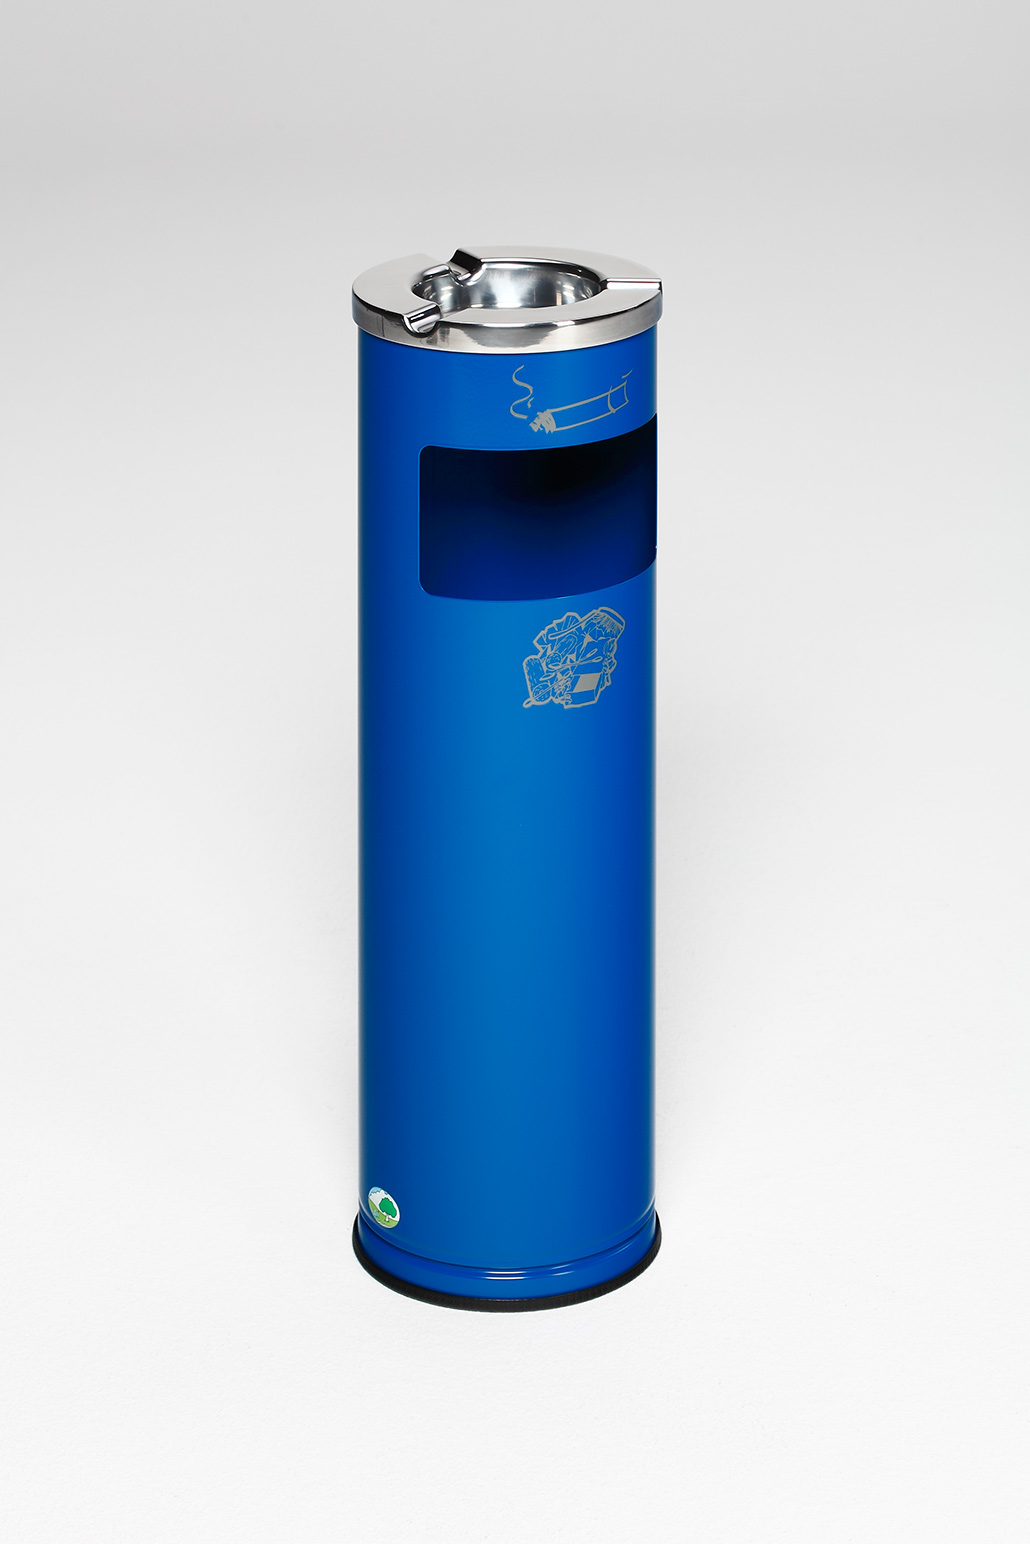 Robuster Kombiascher mit poliertem Aschereinsatz | 11,6 Liter, HxBxT 66x20x20cm | Verzinkter Stahl | Blau